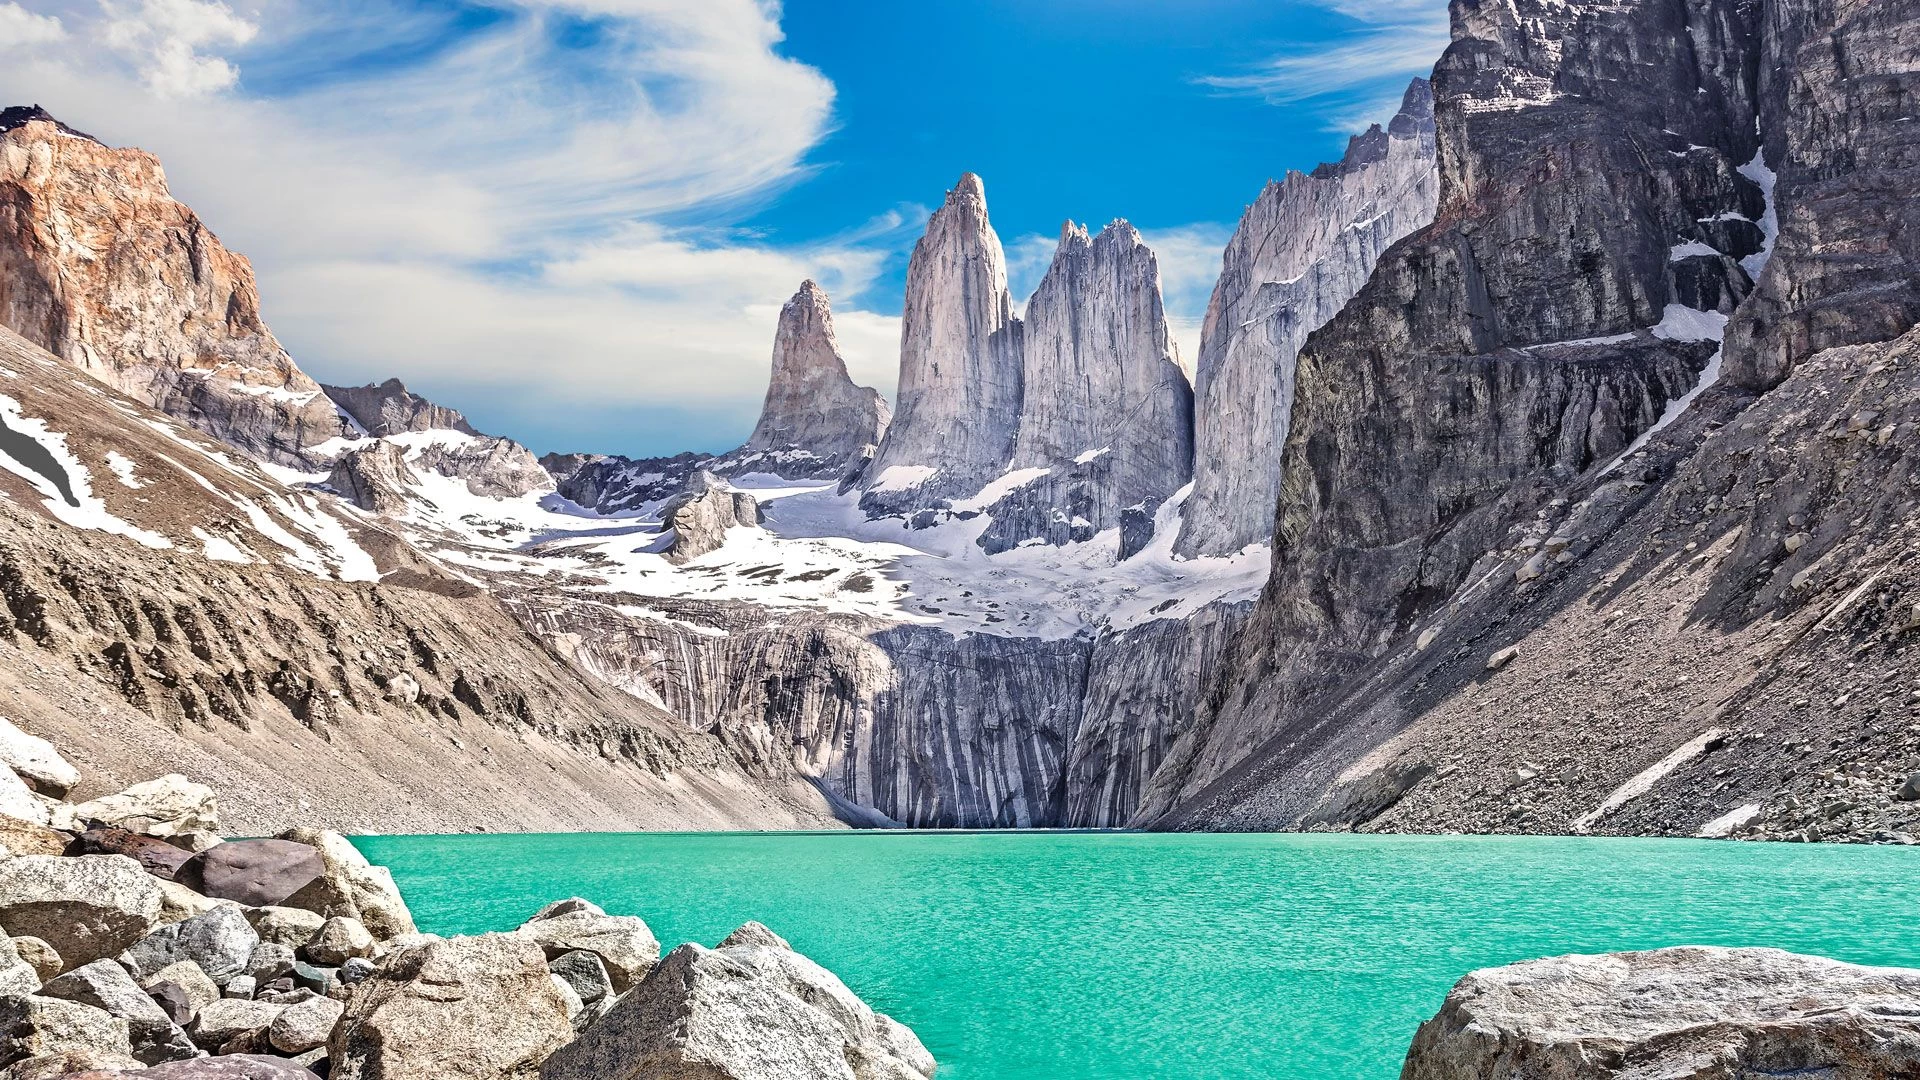 Rodeado de naturaleza: el Parque Nacional Torres del Paine en Chile